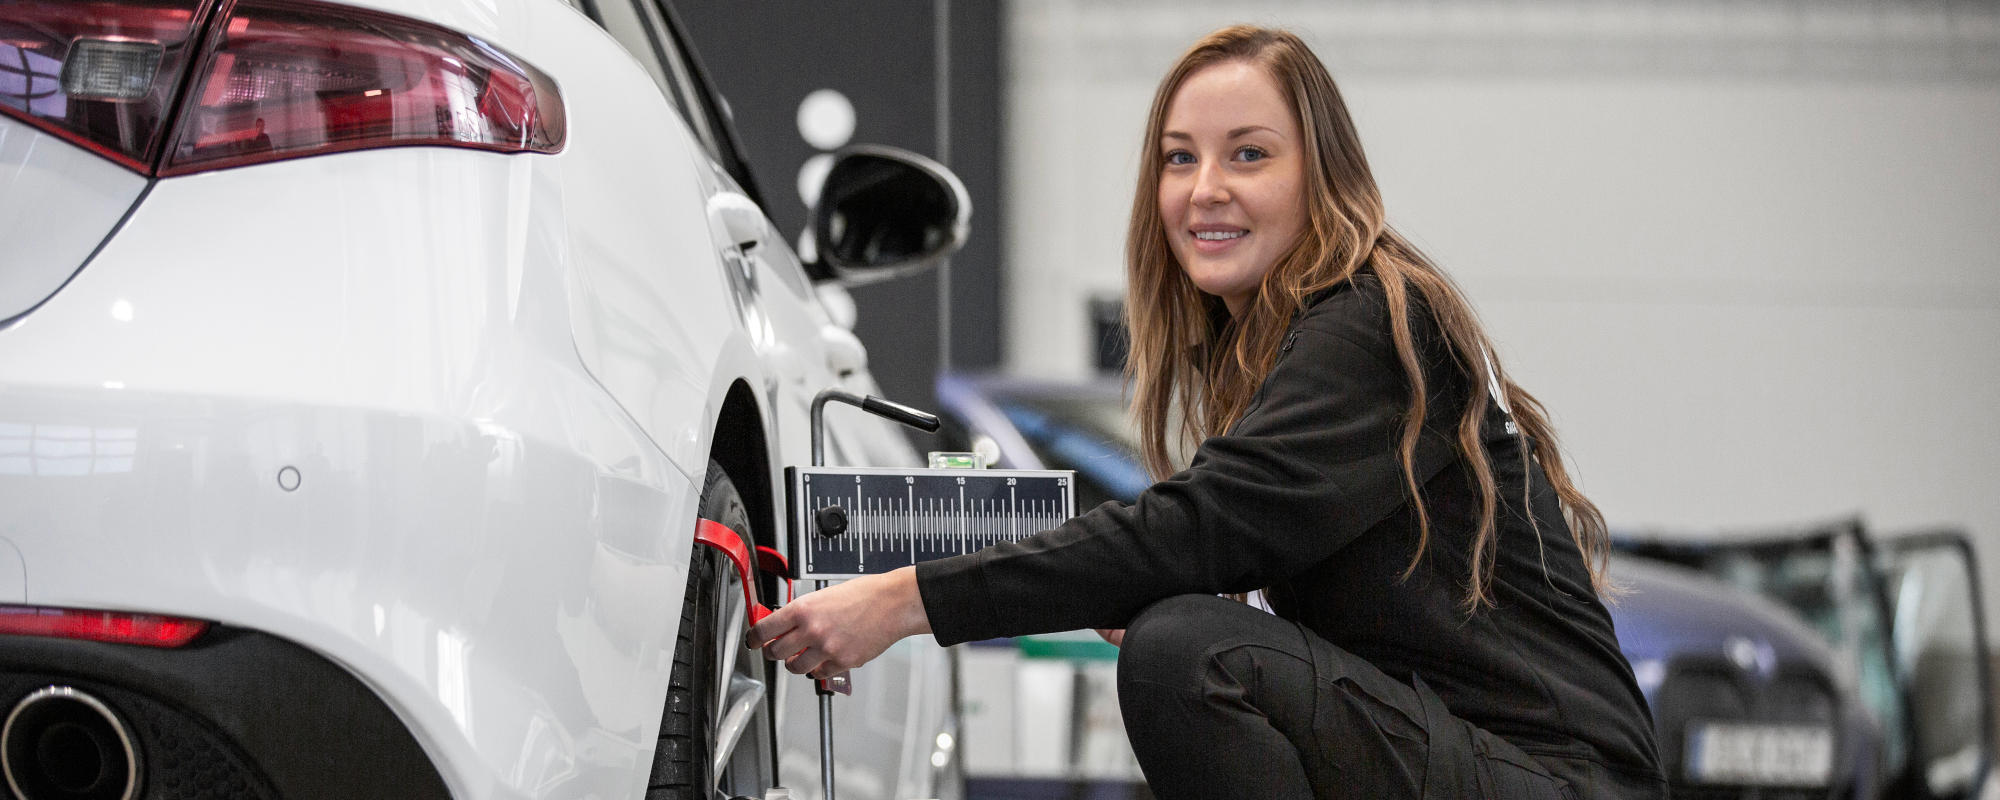 Ryds anställd kvinna använder verktyg på däck för att kalibrera en bil